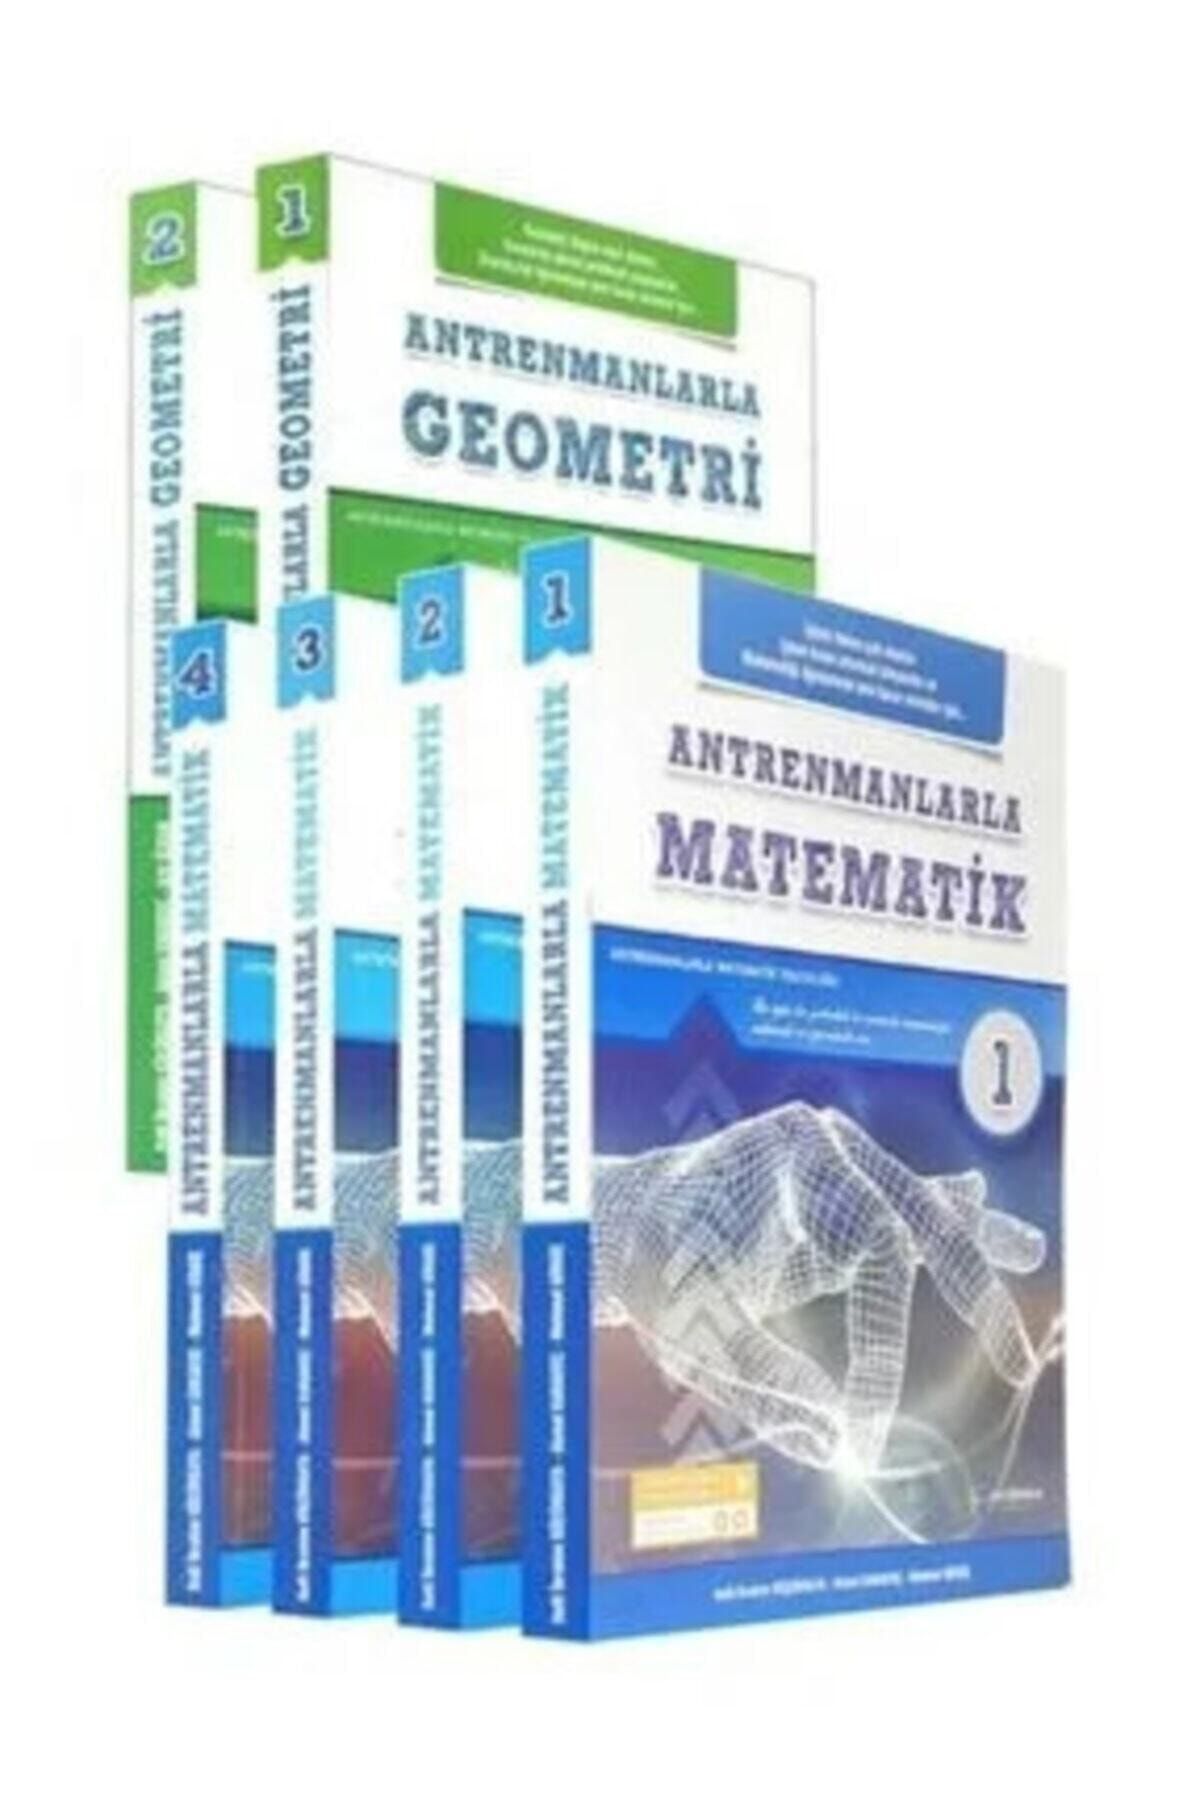 Antrenman Yayınları 2020 Matematik 1-2-3-4 Antrenmanlarla Geometri 1-2 Set Ant2020 21